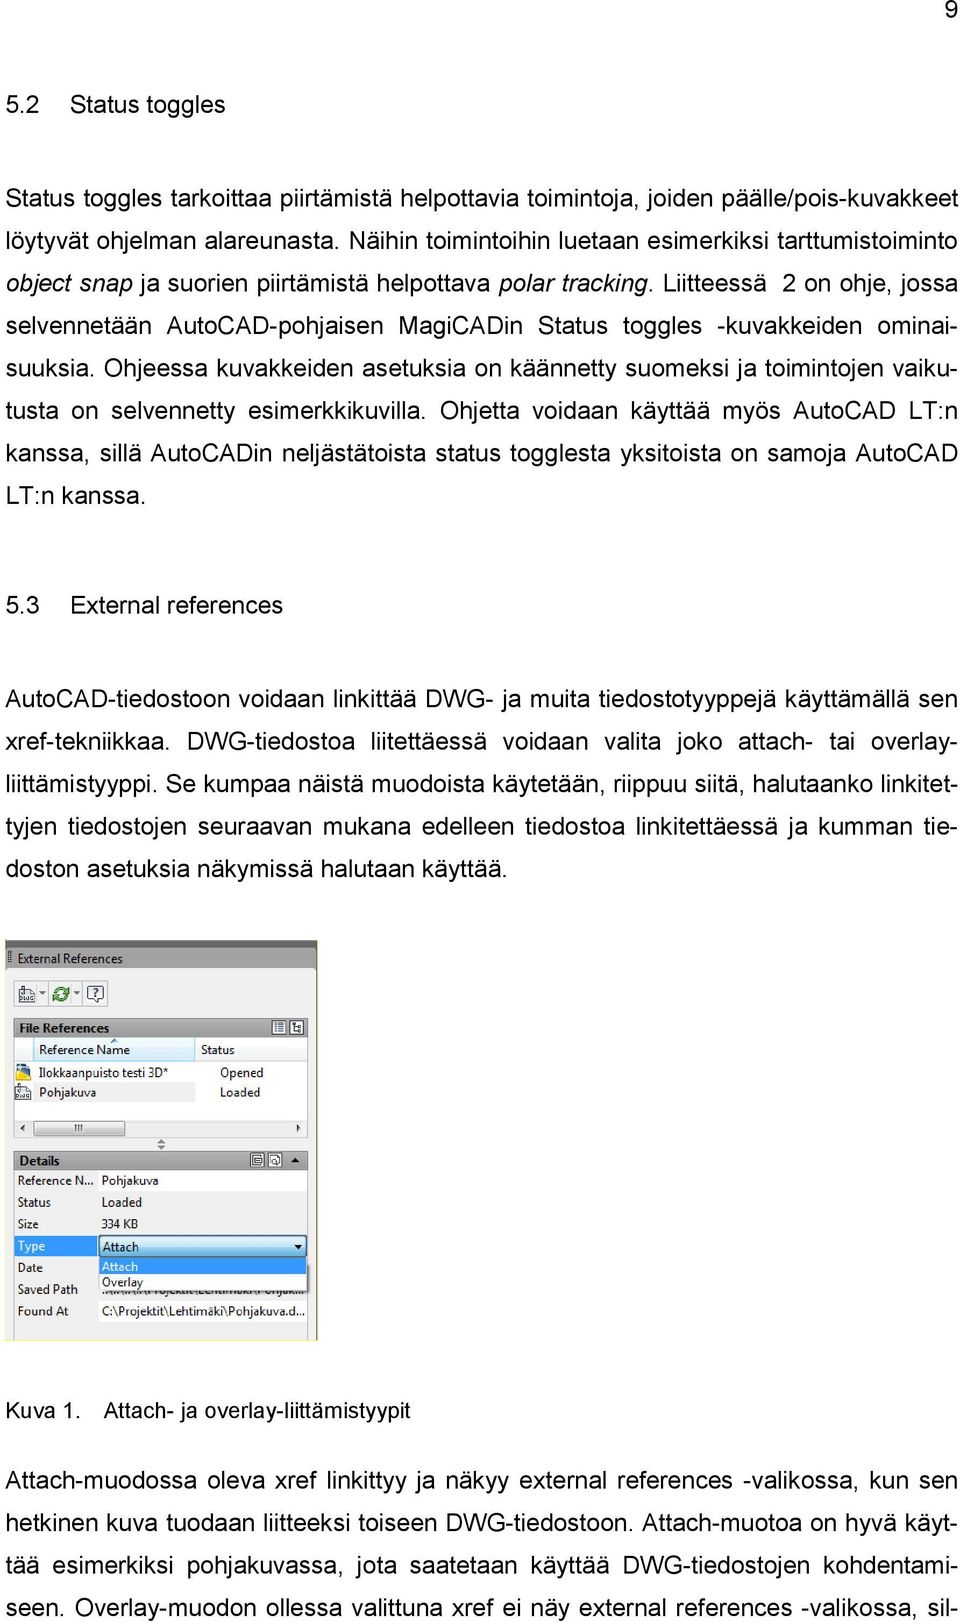 Liitteessä 2 on ohje, jossa selvennetään AutoCAD-pohjaisen MagiCADin Status toggles -kuvakkeiden ominaisuuksia.